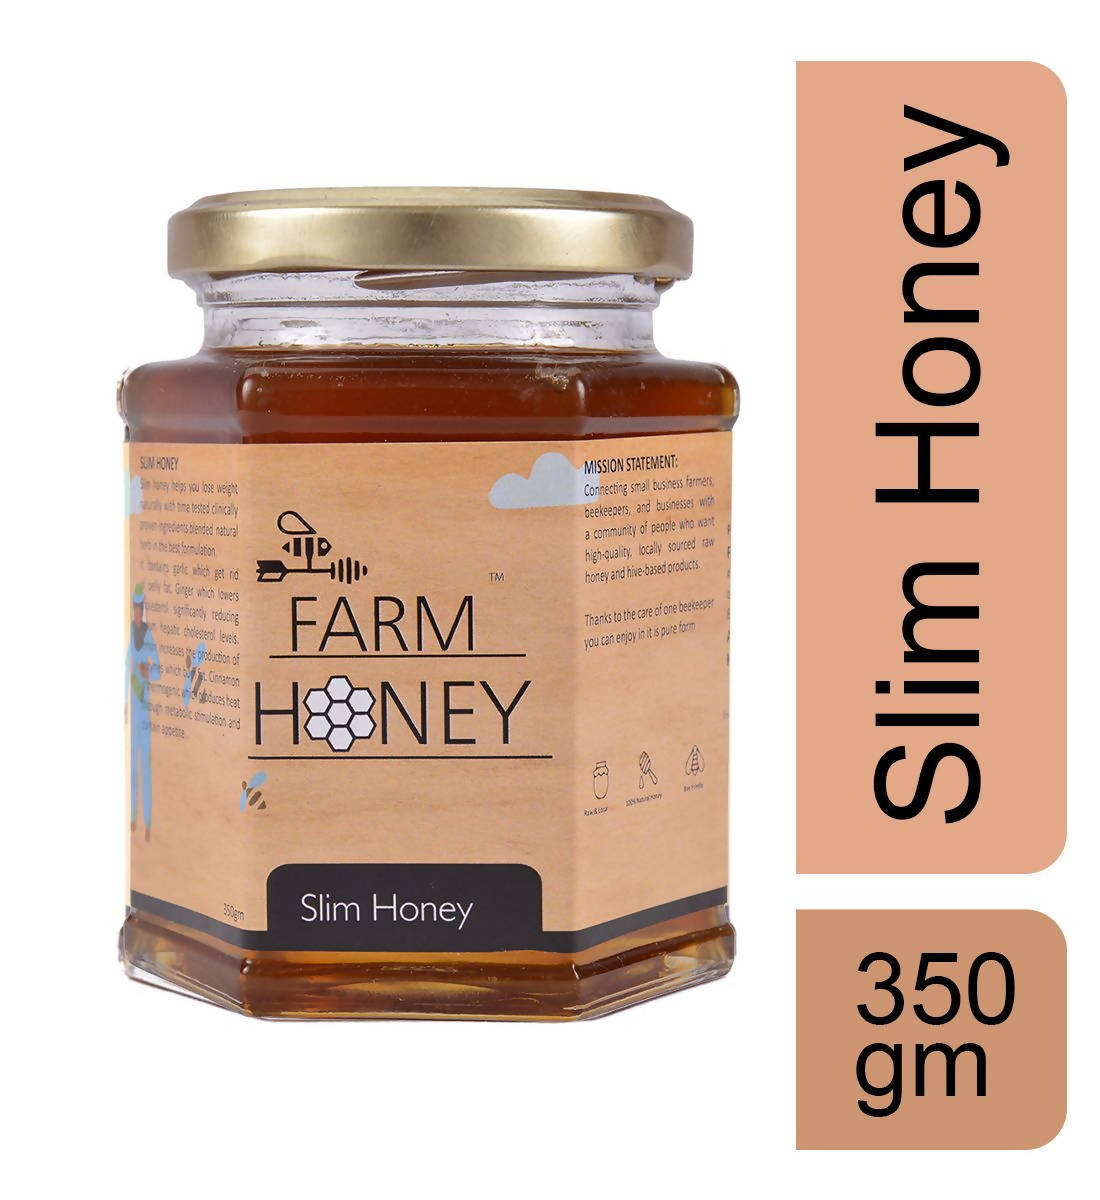 Farm Honey Slim Honey